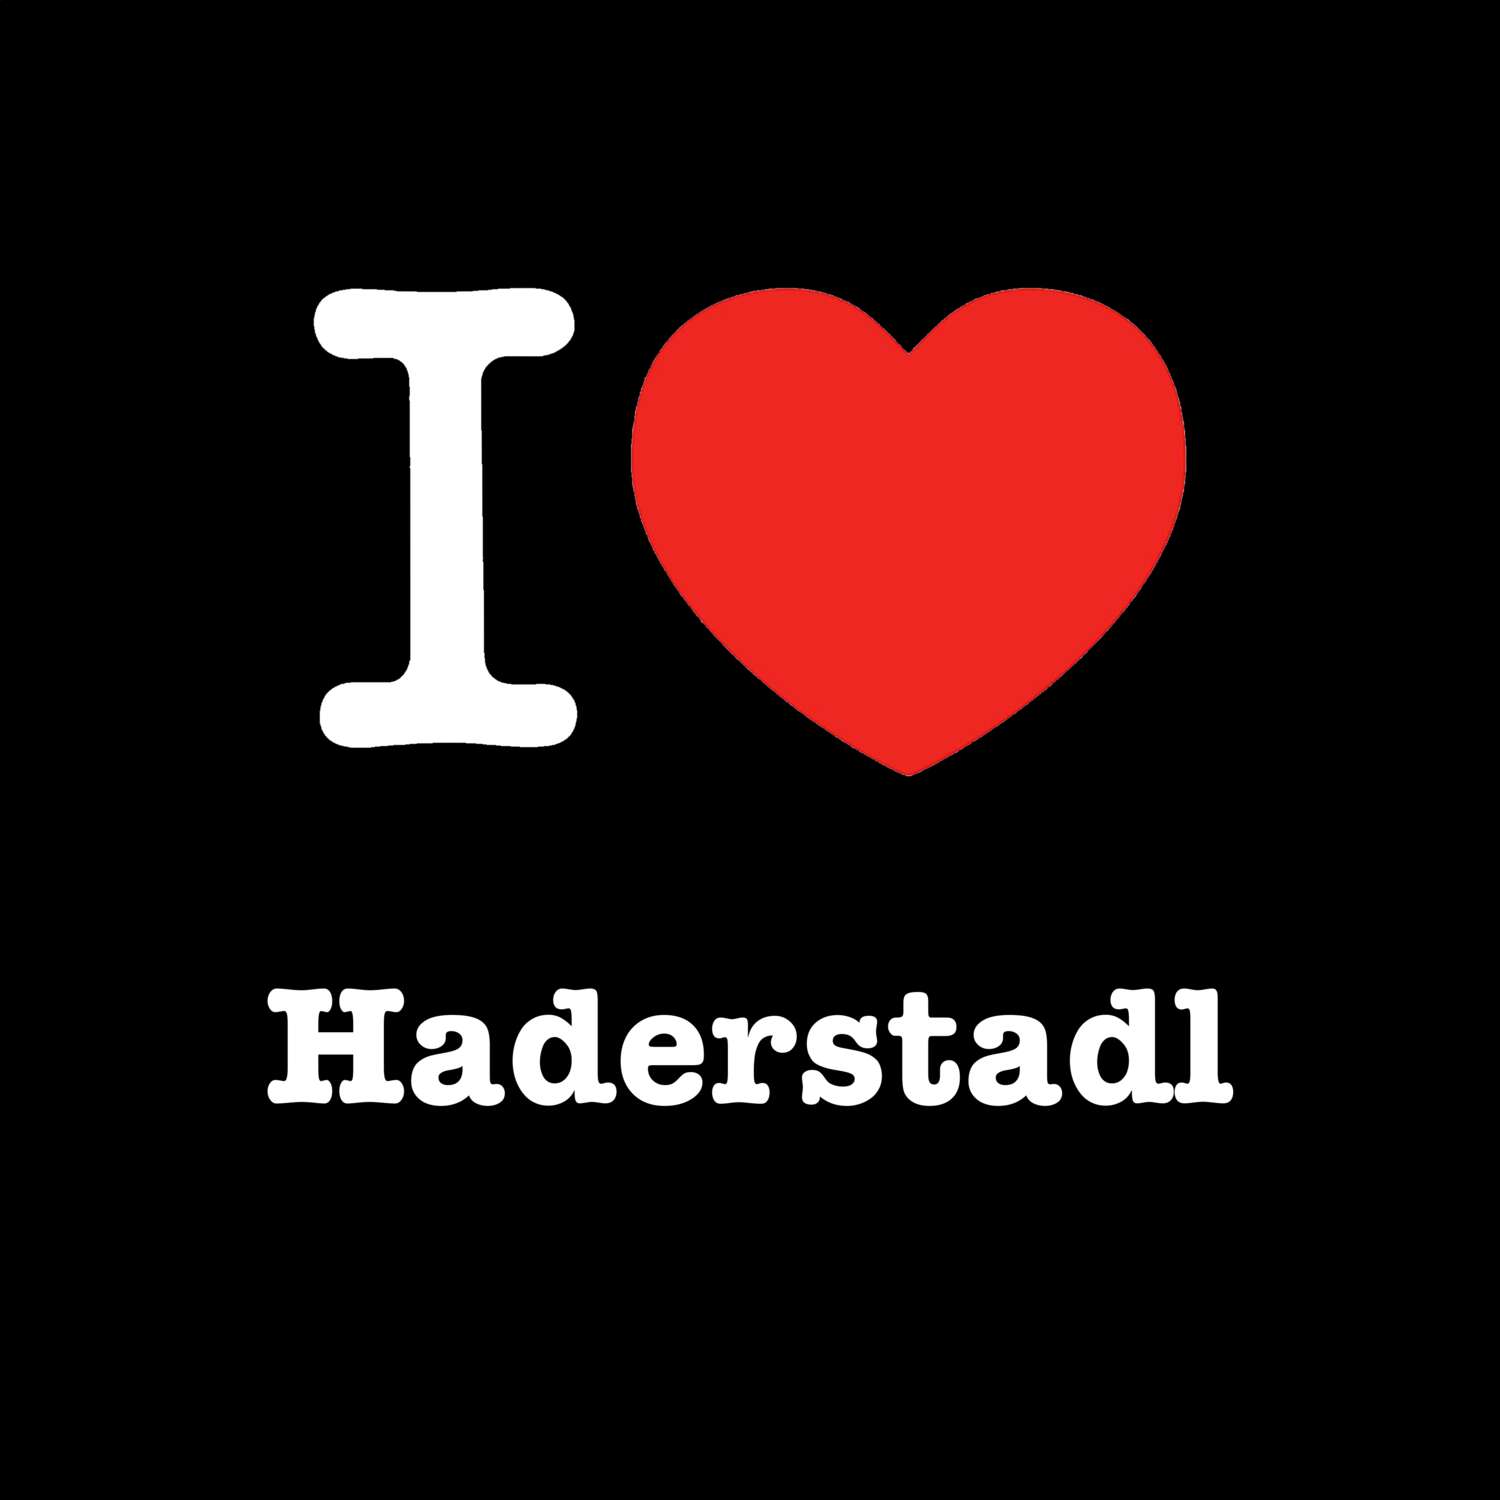 Haderstadl T-Shirt »I love«